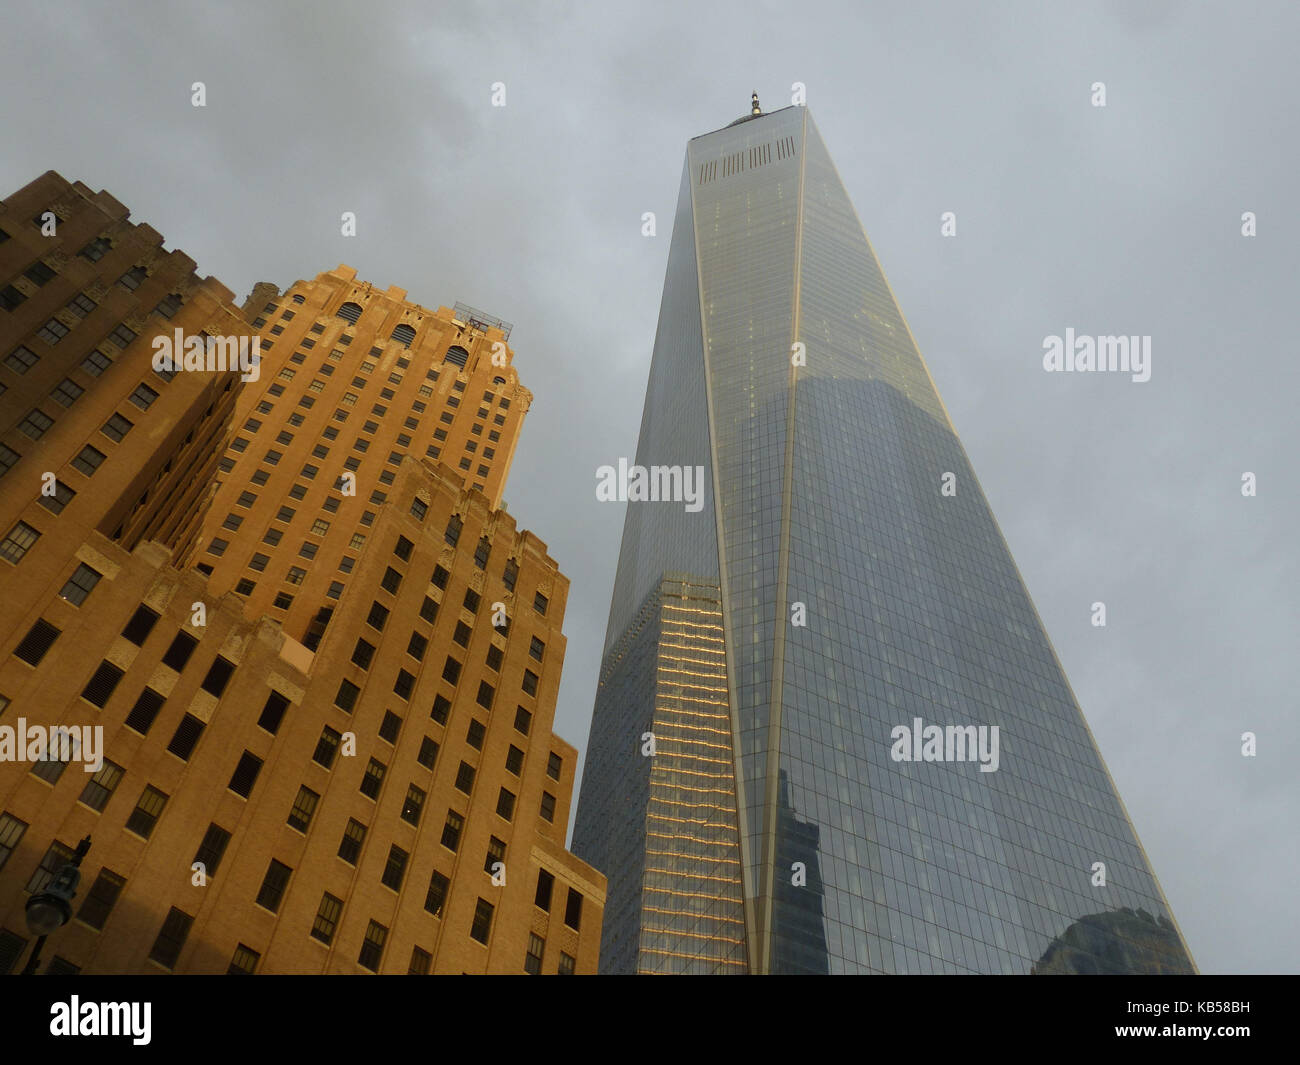 World Trade Center, precedentemente noto come libertà tower, progettato dall'architetto David childs, sorge oltre la parte inferiore di Manhattan Foto Stock